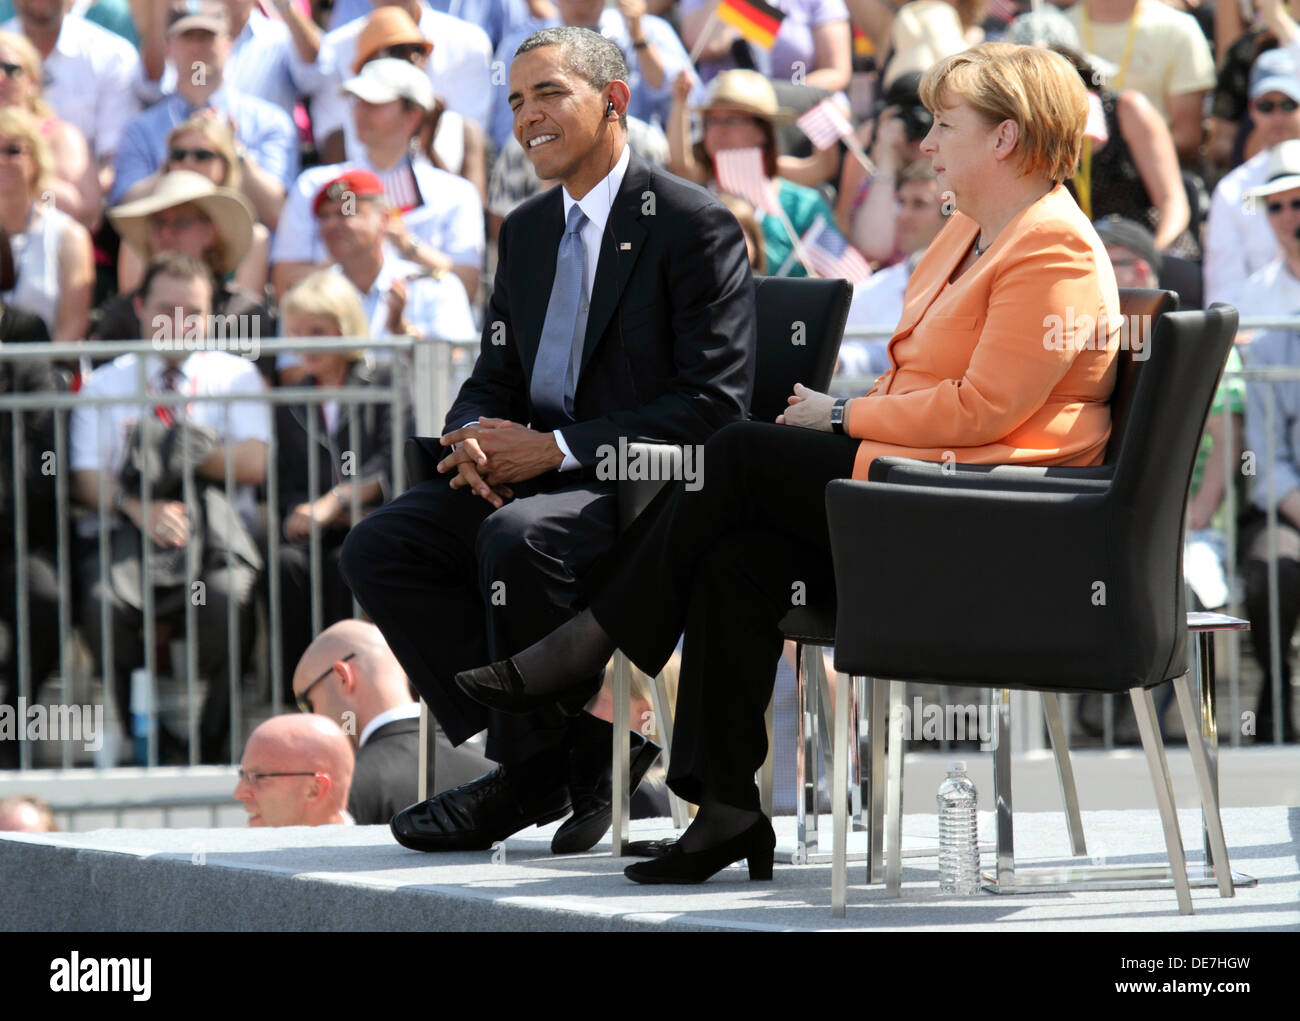 Berlín, Alemania, el presidente estadounidense Barack Obama y la Canciller alemana Angela Merkel (CDU) en la Puerta de Brandenburgo Foto de stock